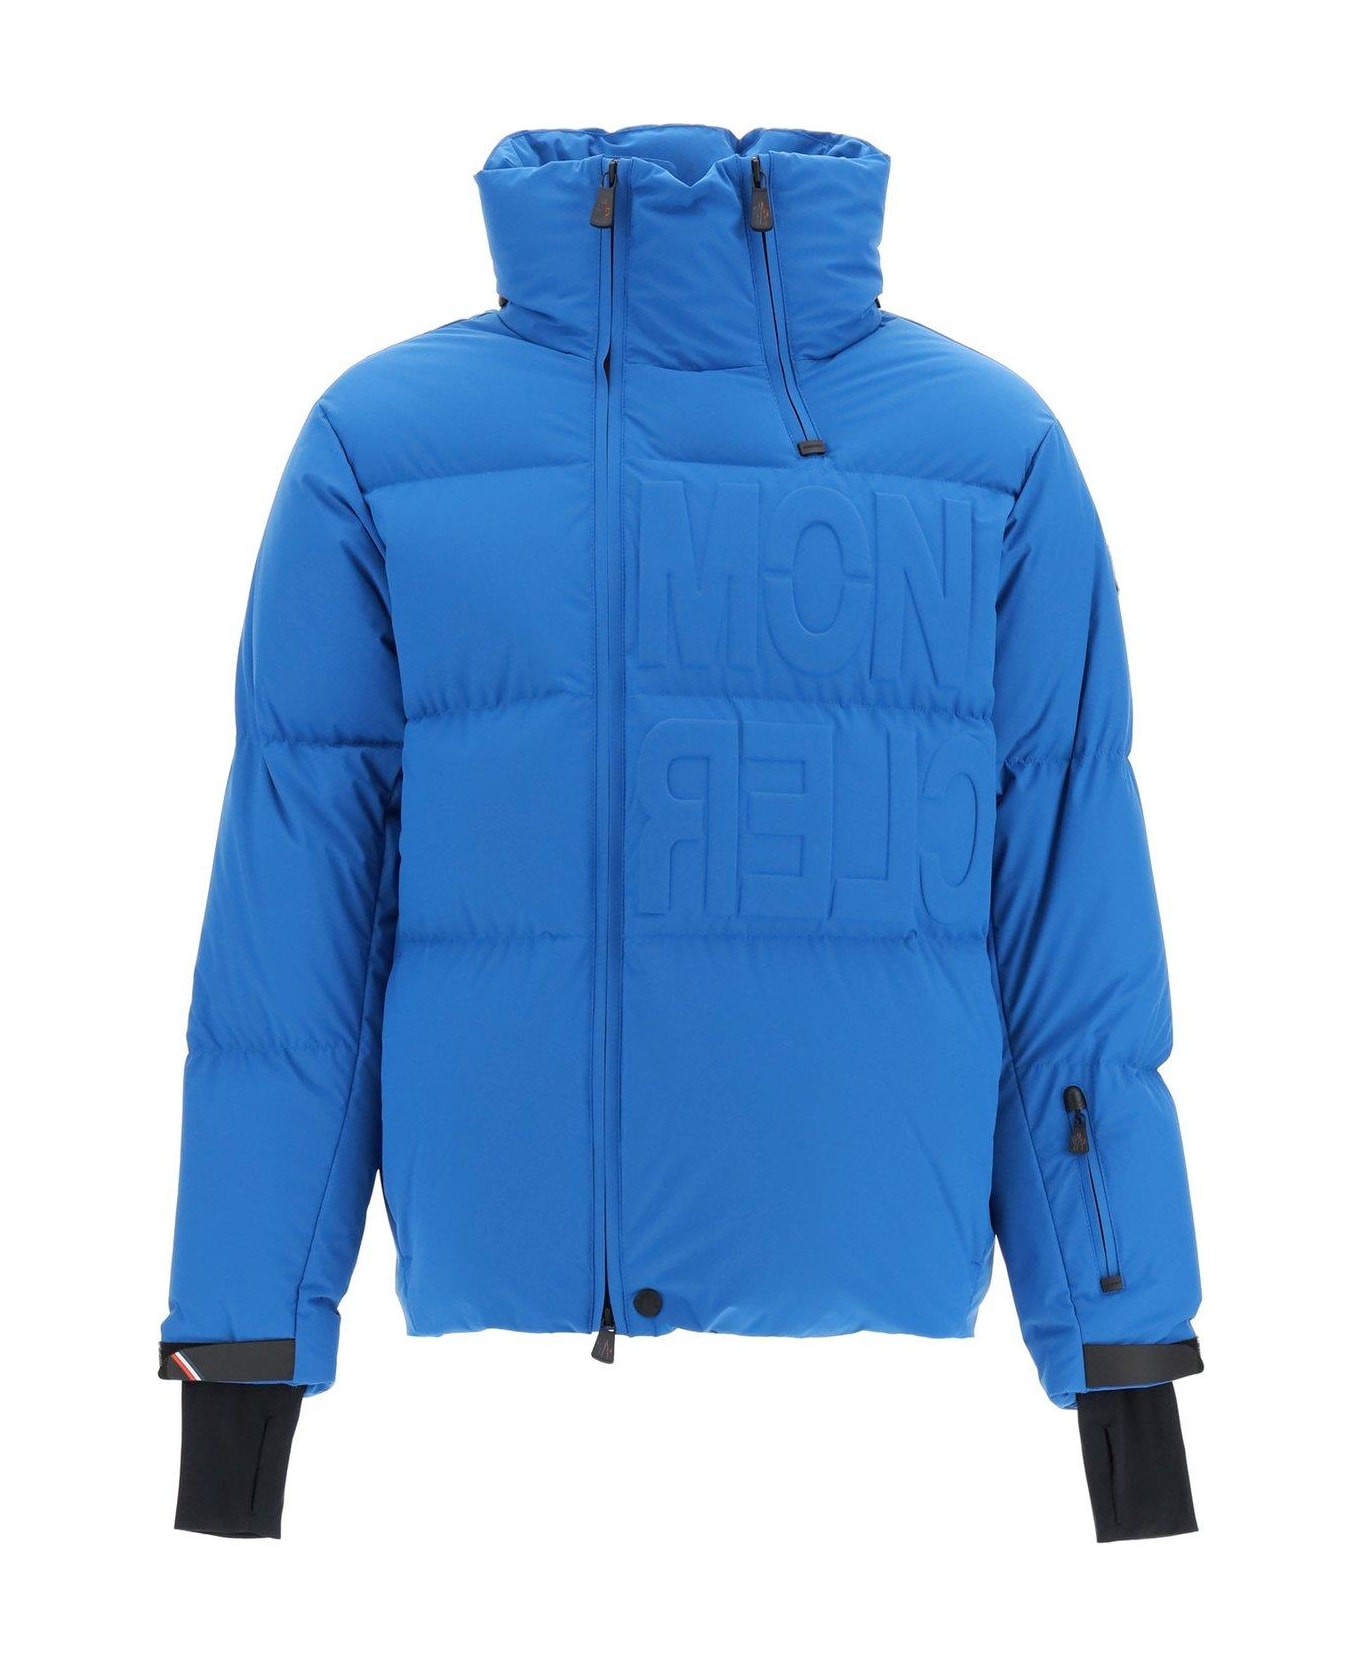 Moncler Grenoble Arvier Padded Jacket - Bluette